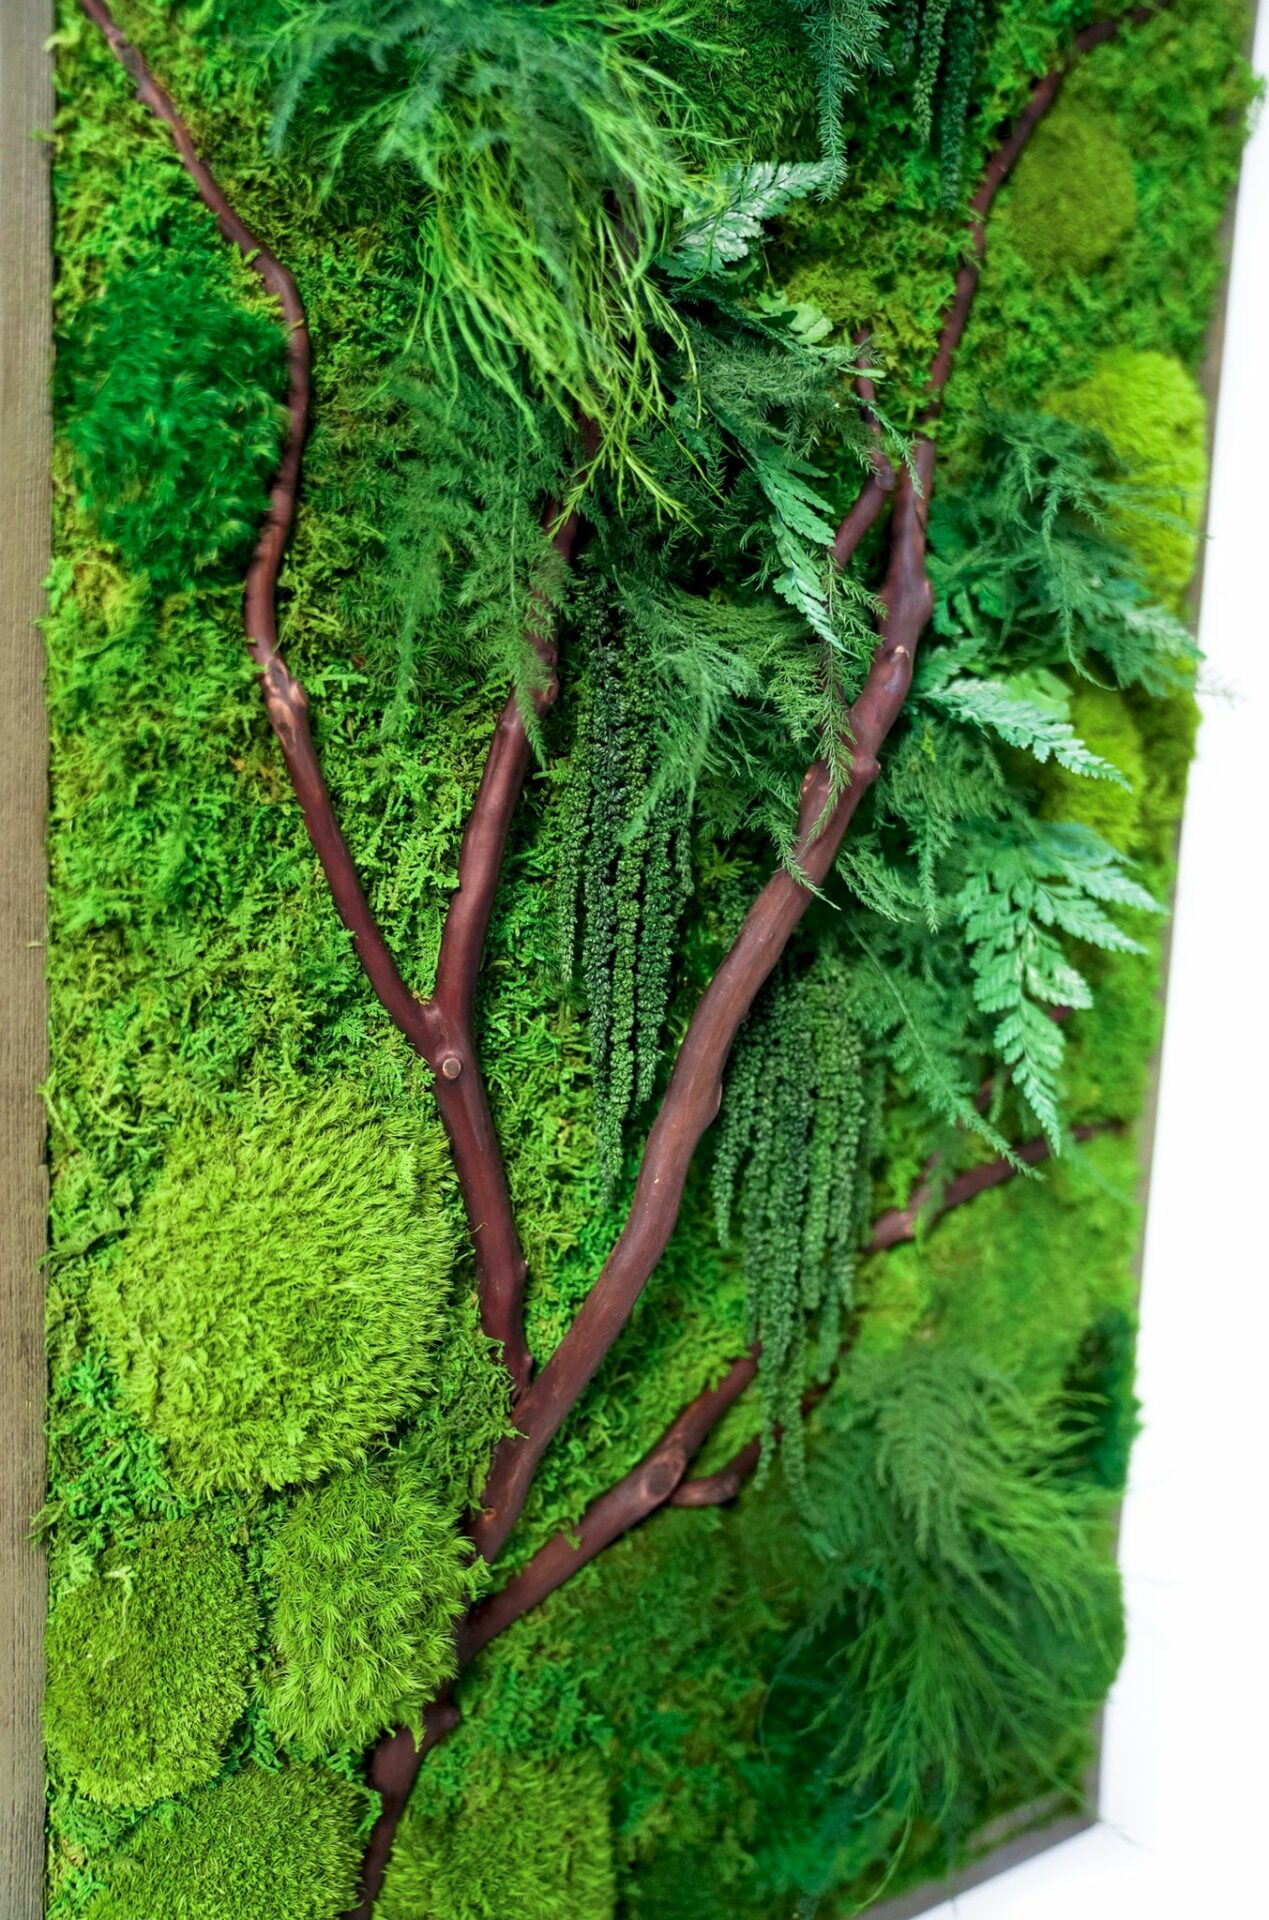 Moss Art 20w x 20h